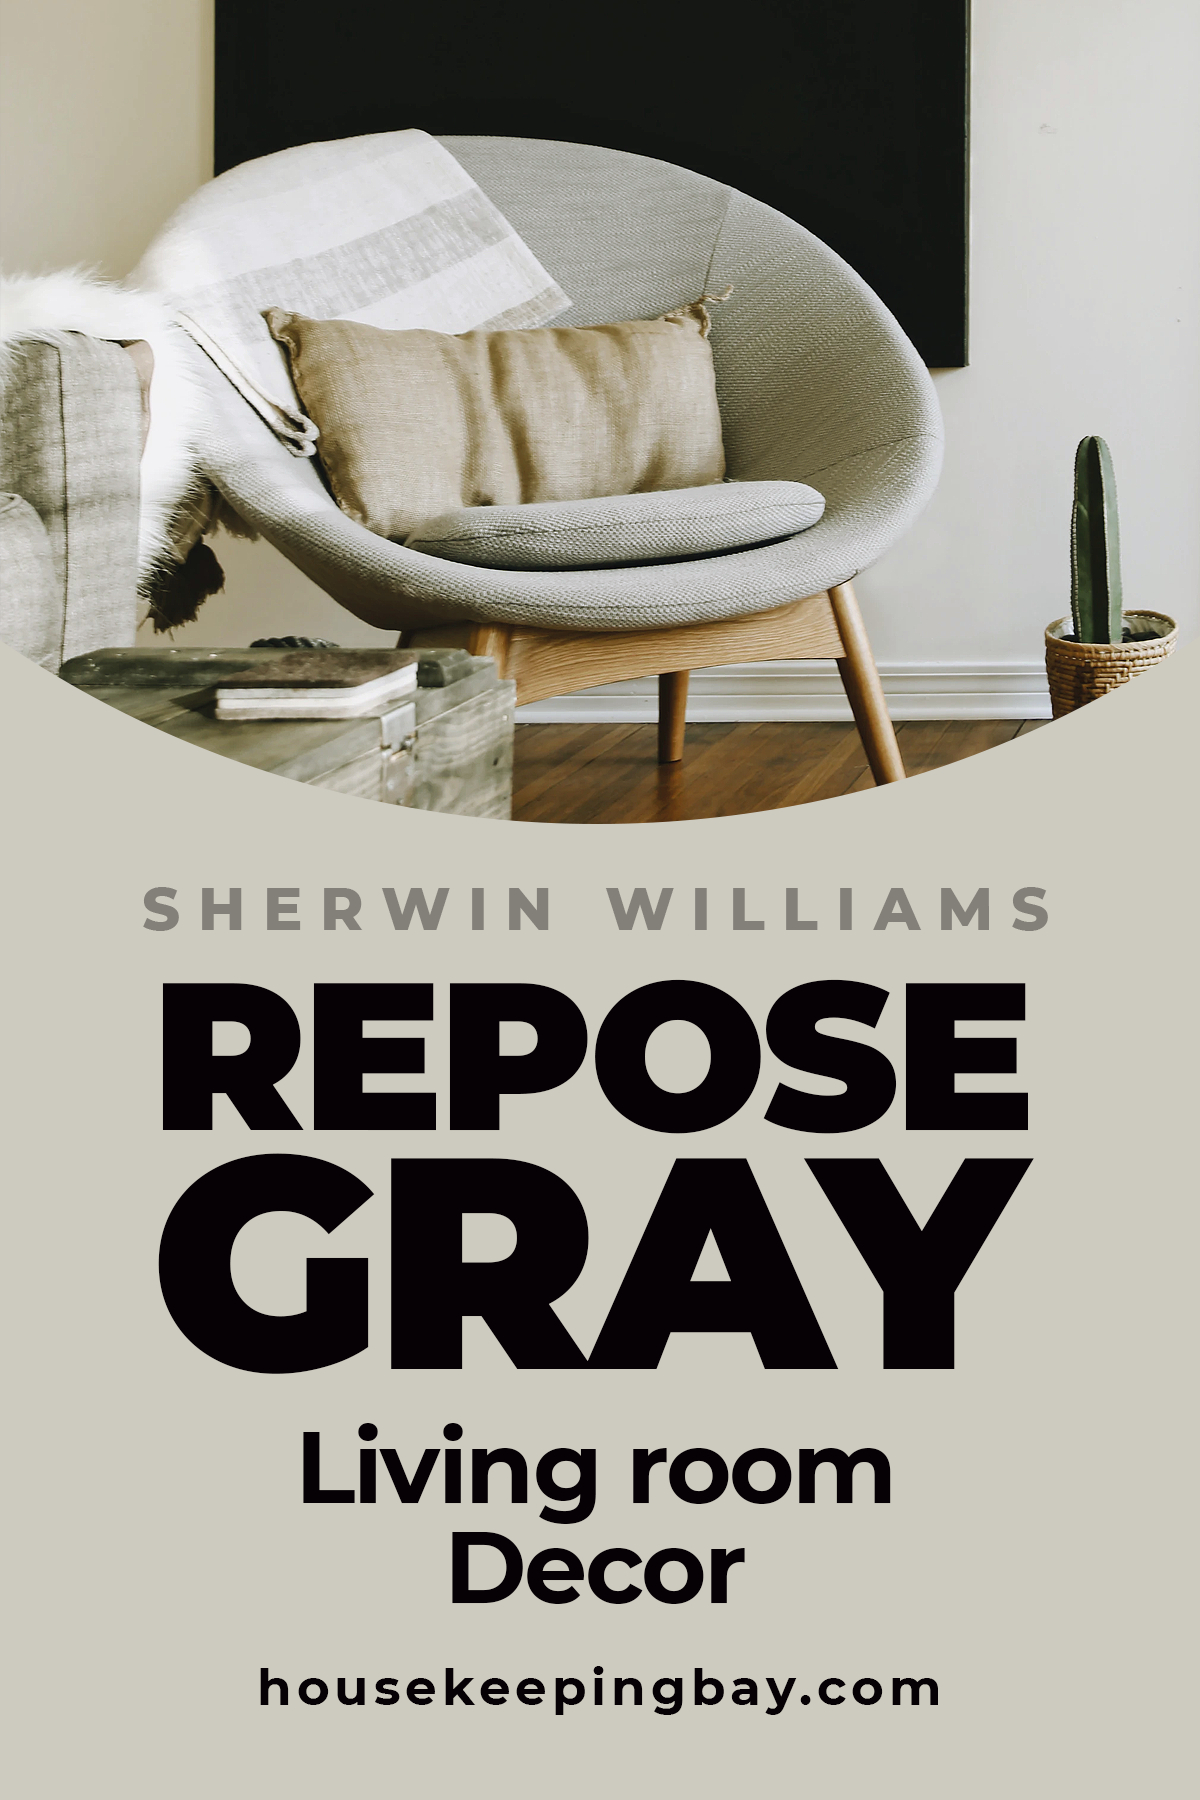 Repose Gray living room Decor